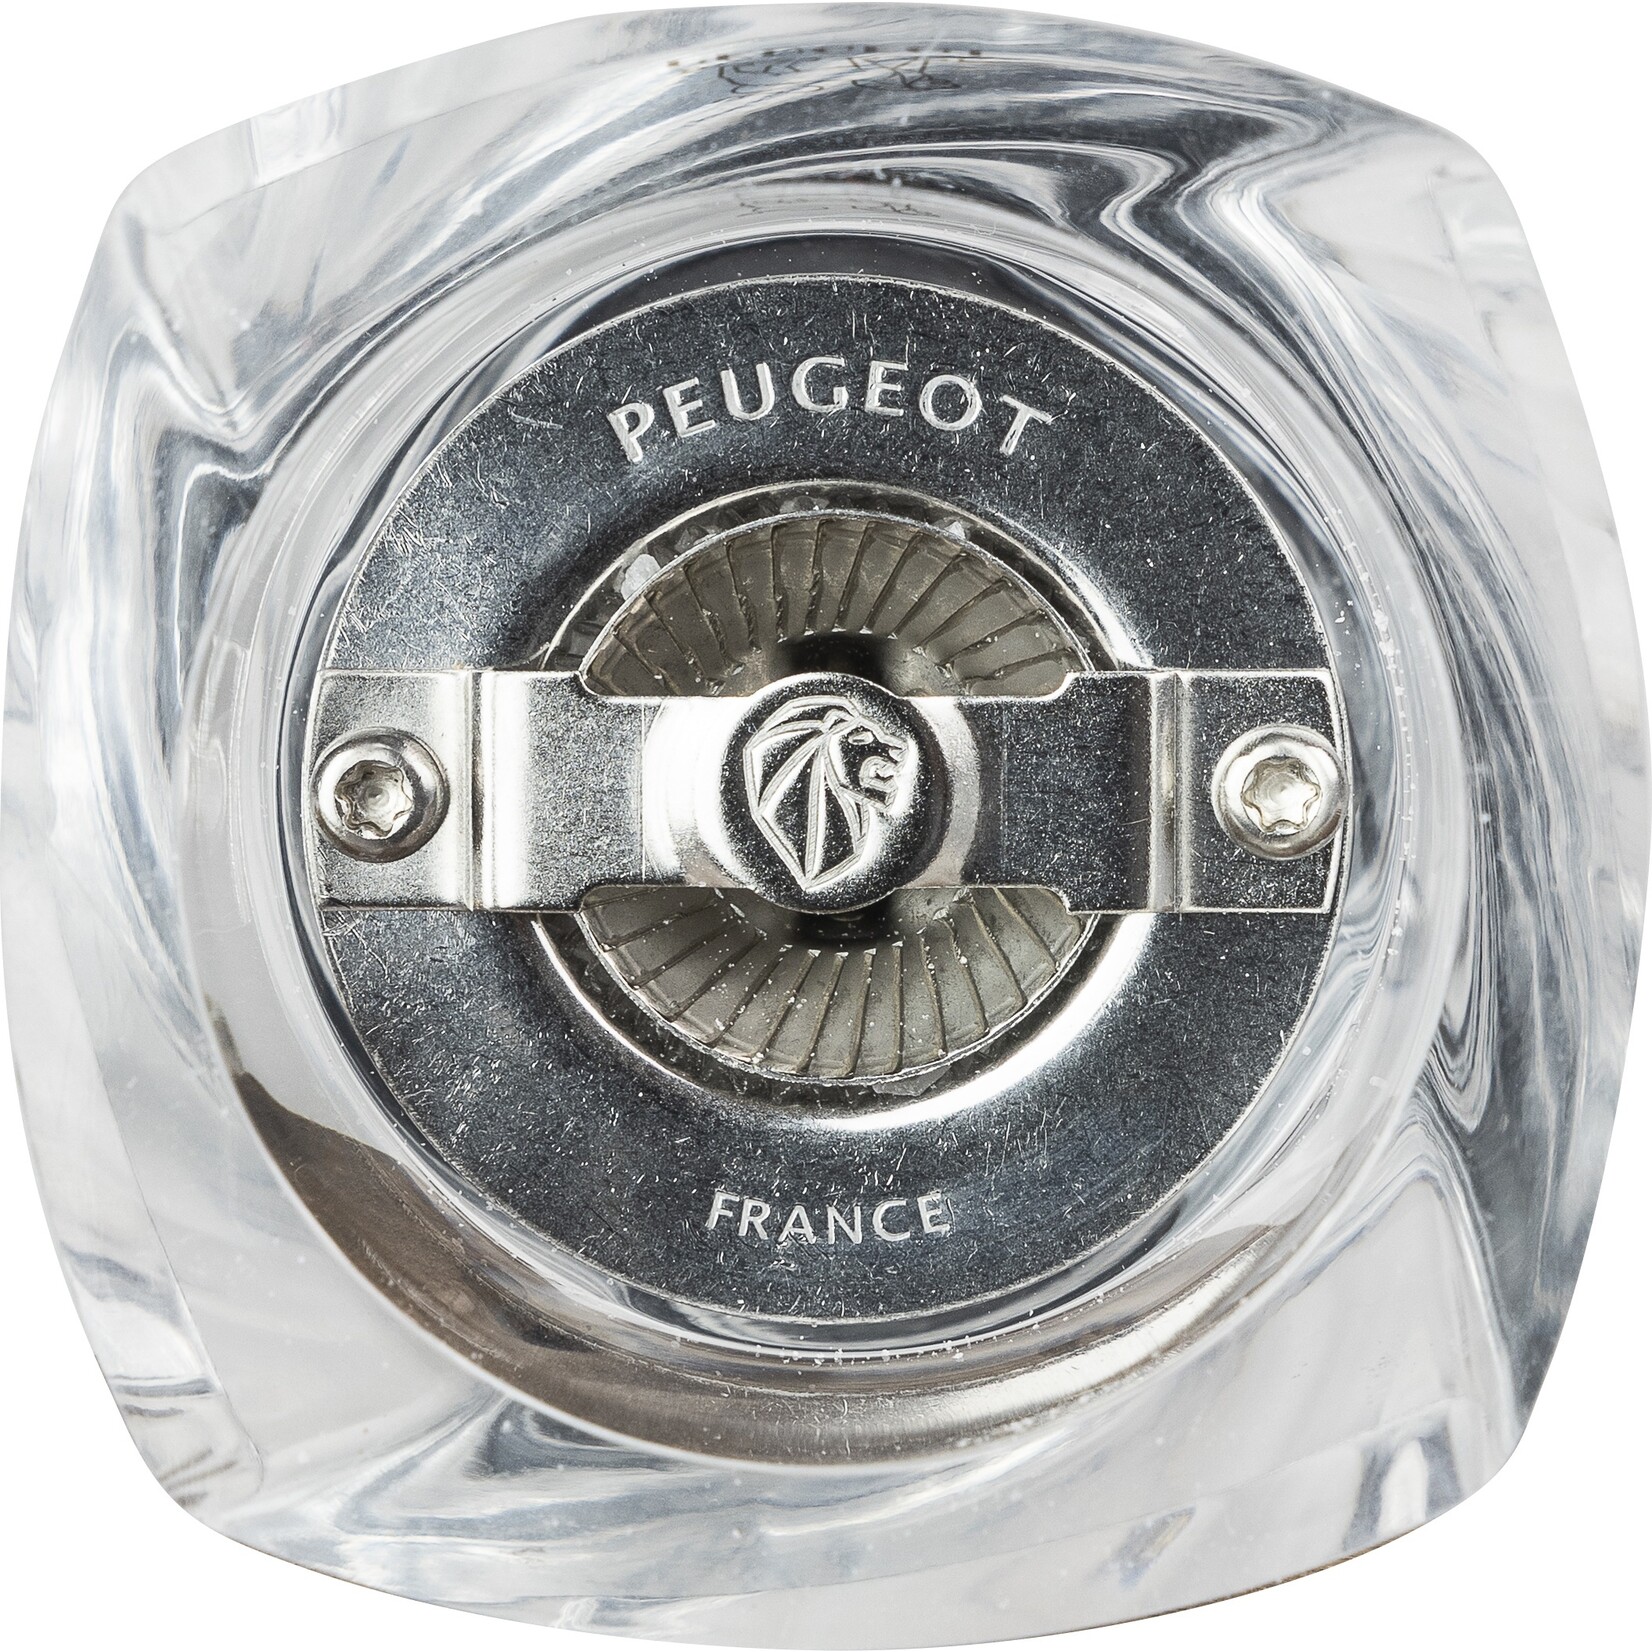 Peugeot Peugeot Ouessant zoutmolen 14 cm, transparant, acryl/inox